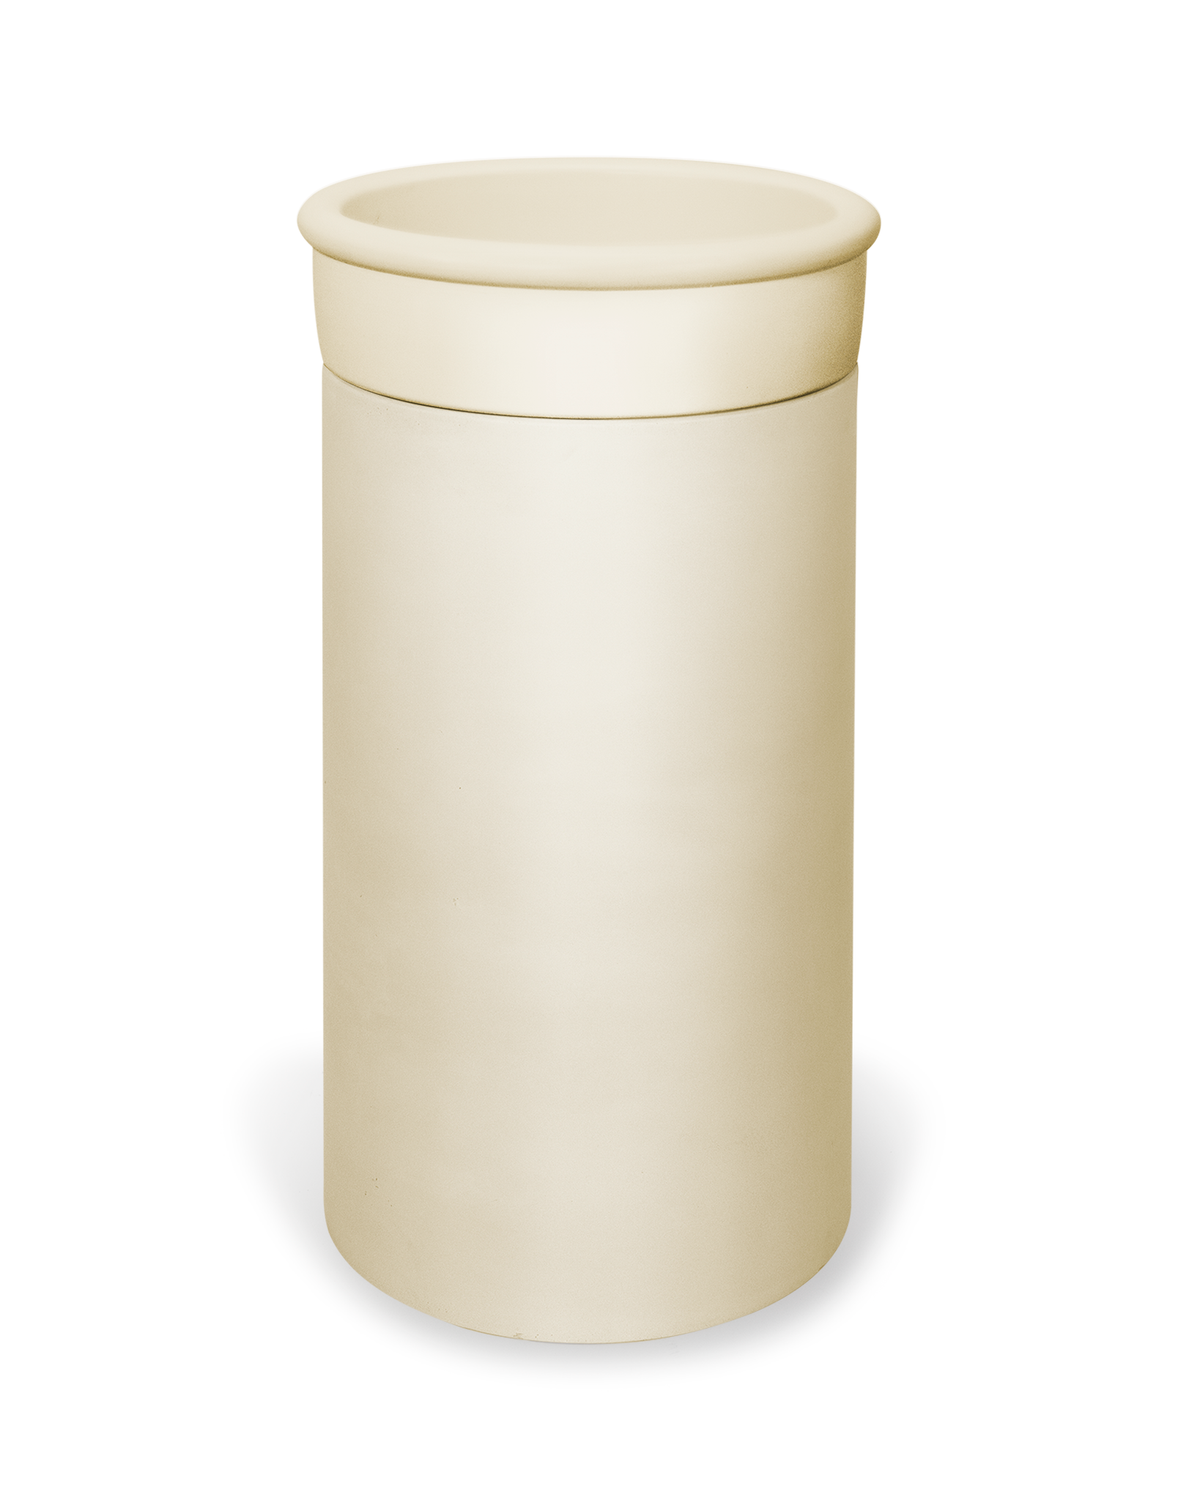 Cylinder - Tubb Basin (Custard)